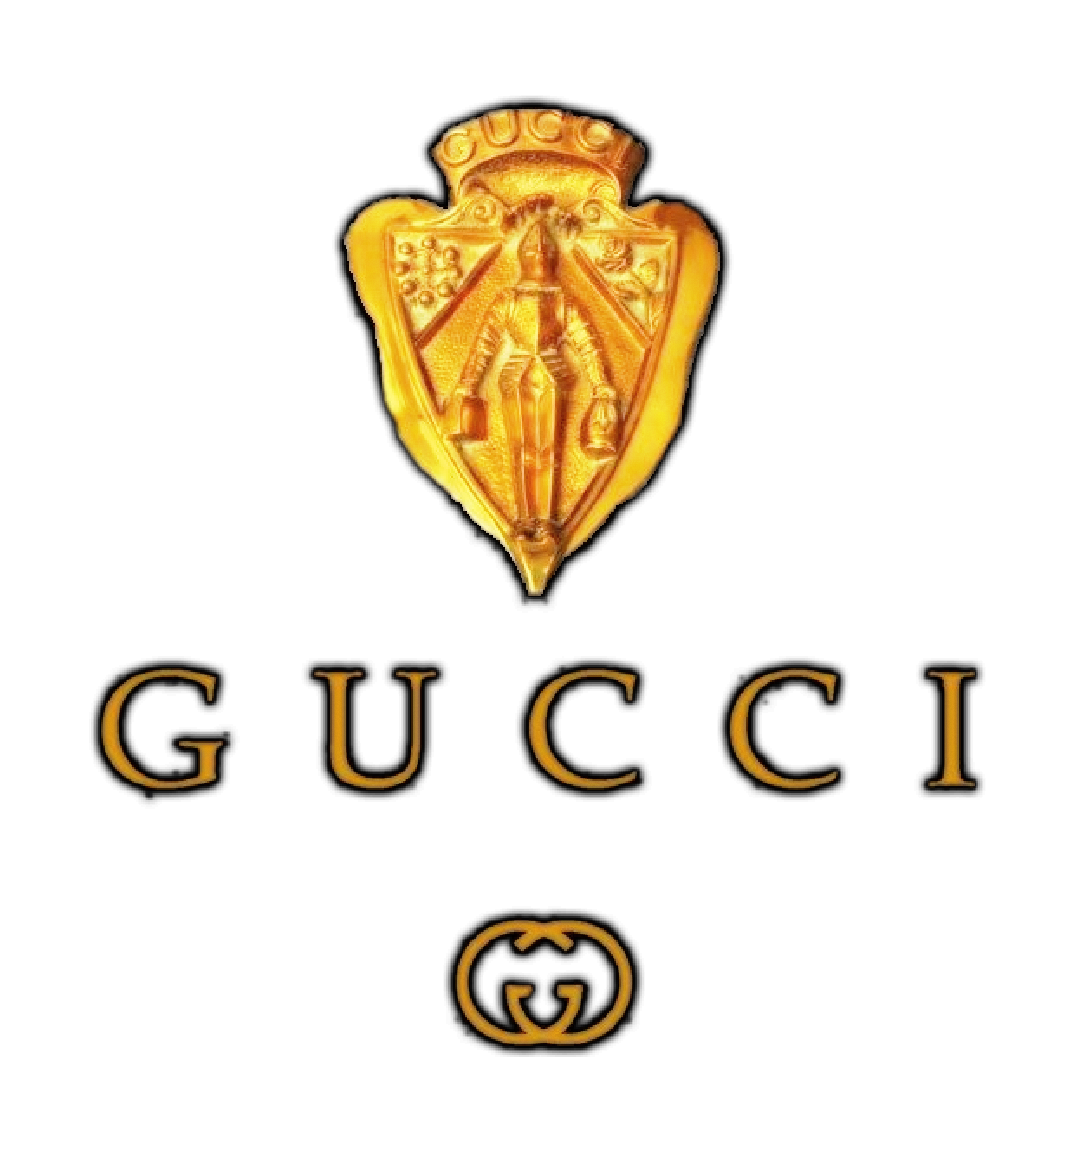 Gucci Gold Logo PNG Image | PNG Arts